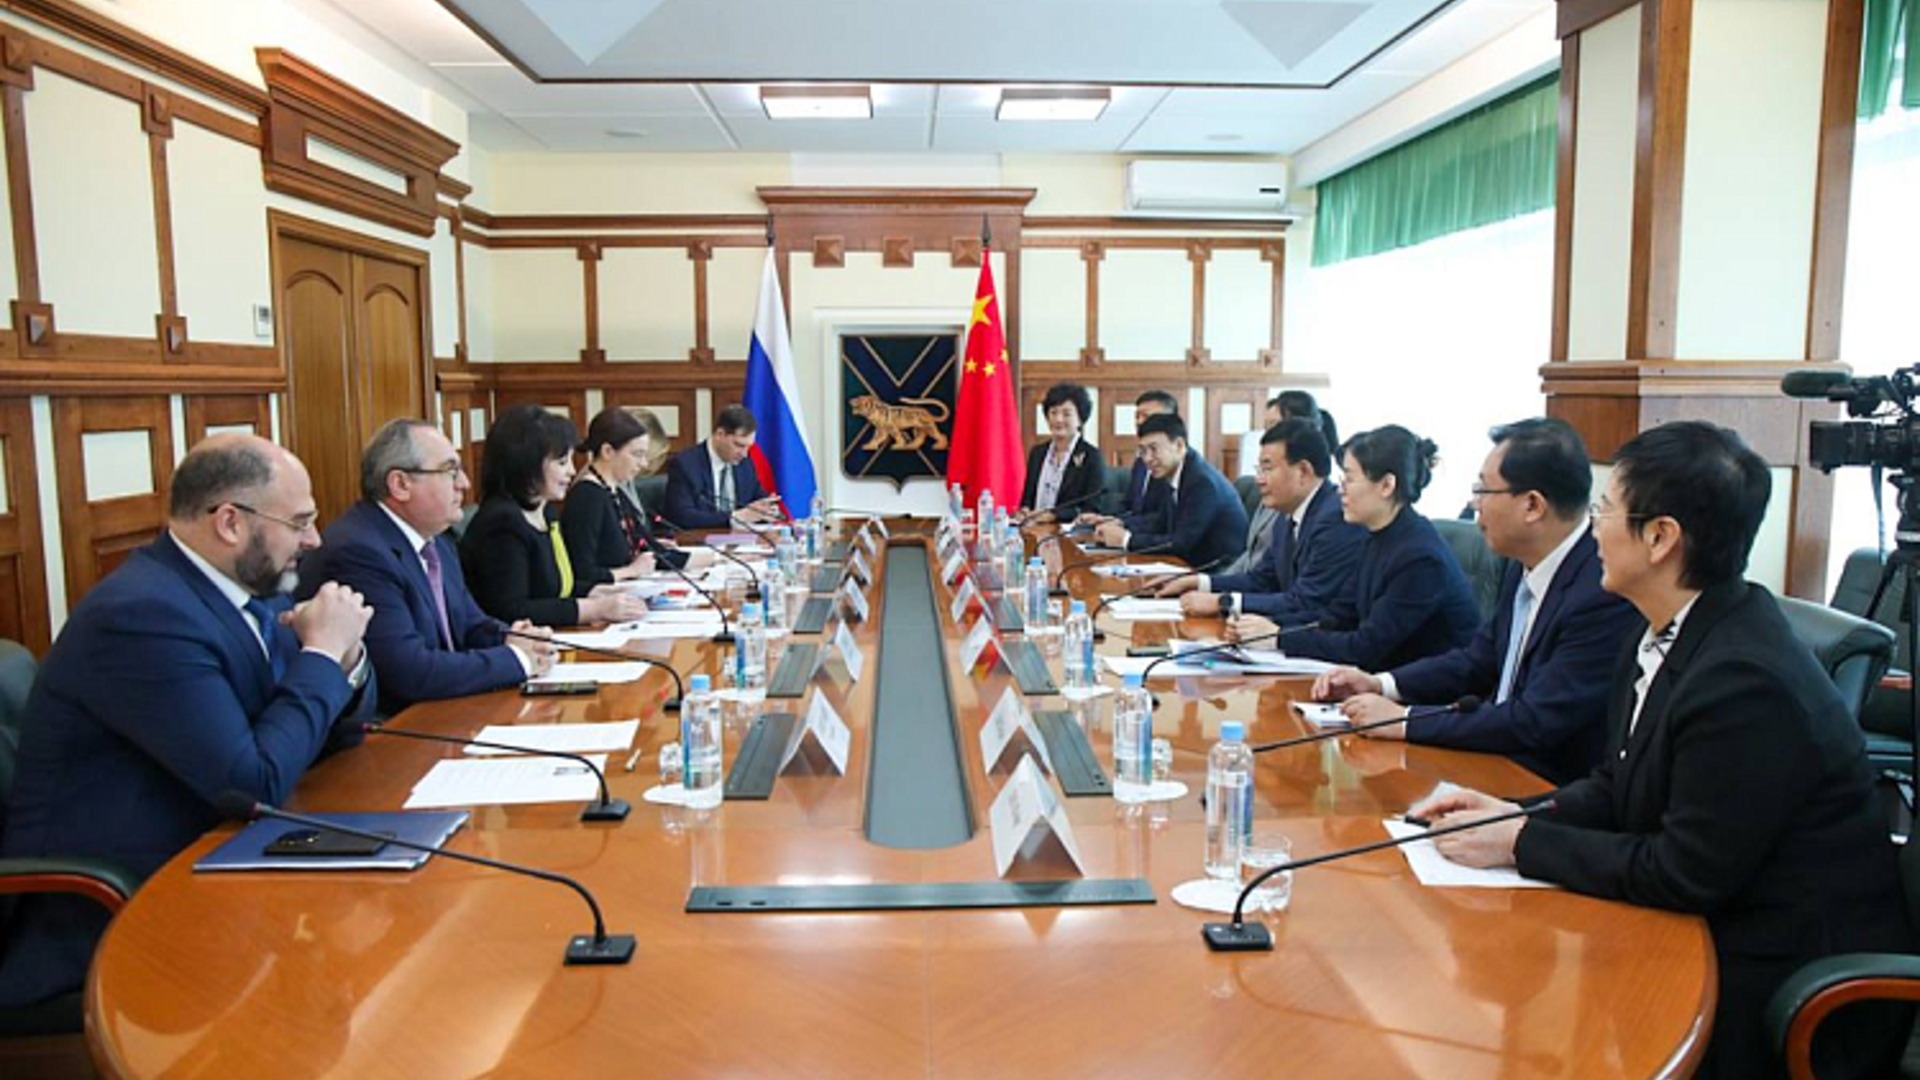 Представители Приморья и провинции Цзилинь продолжат плодотворное сотрудничество